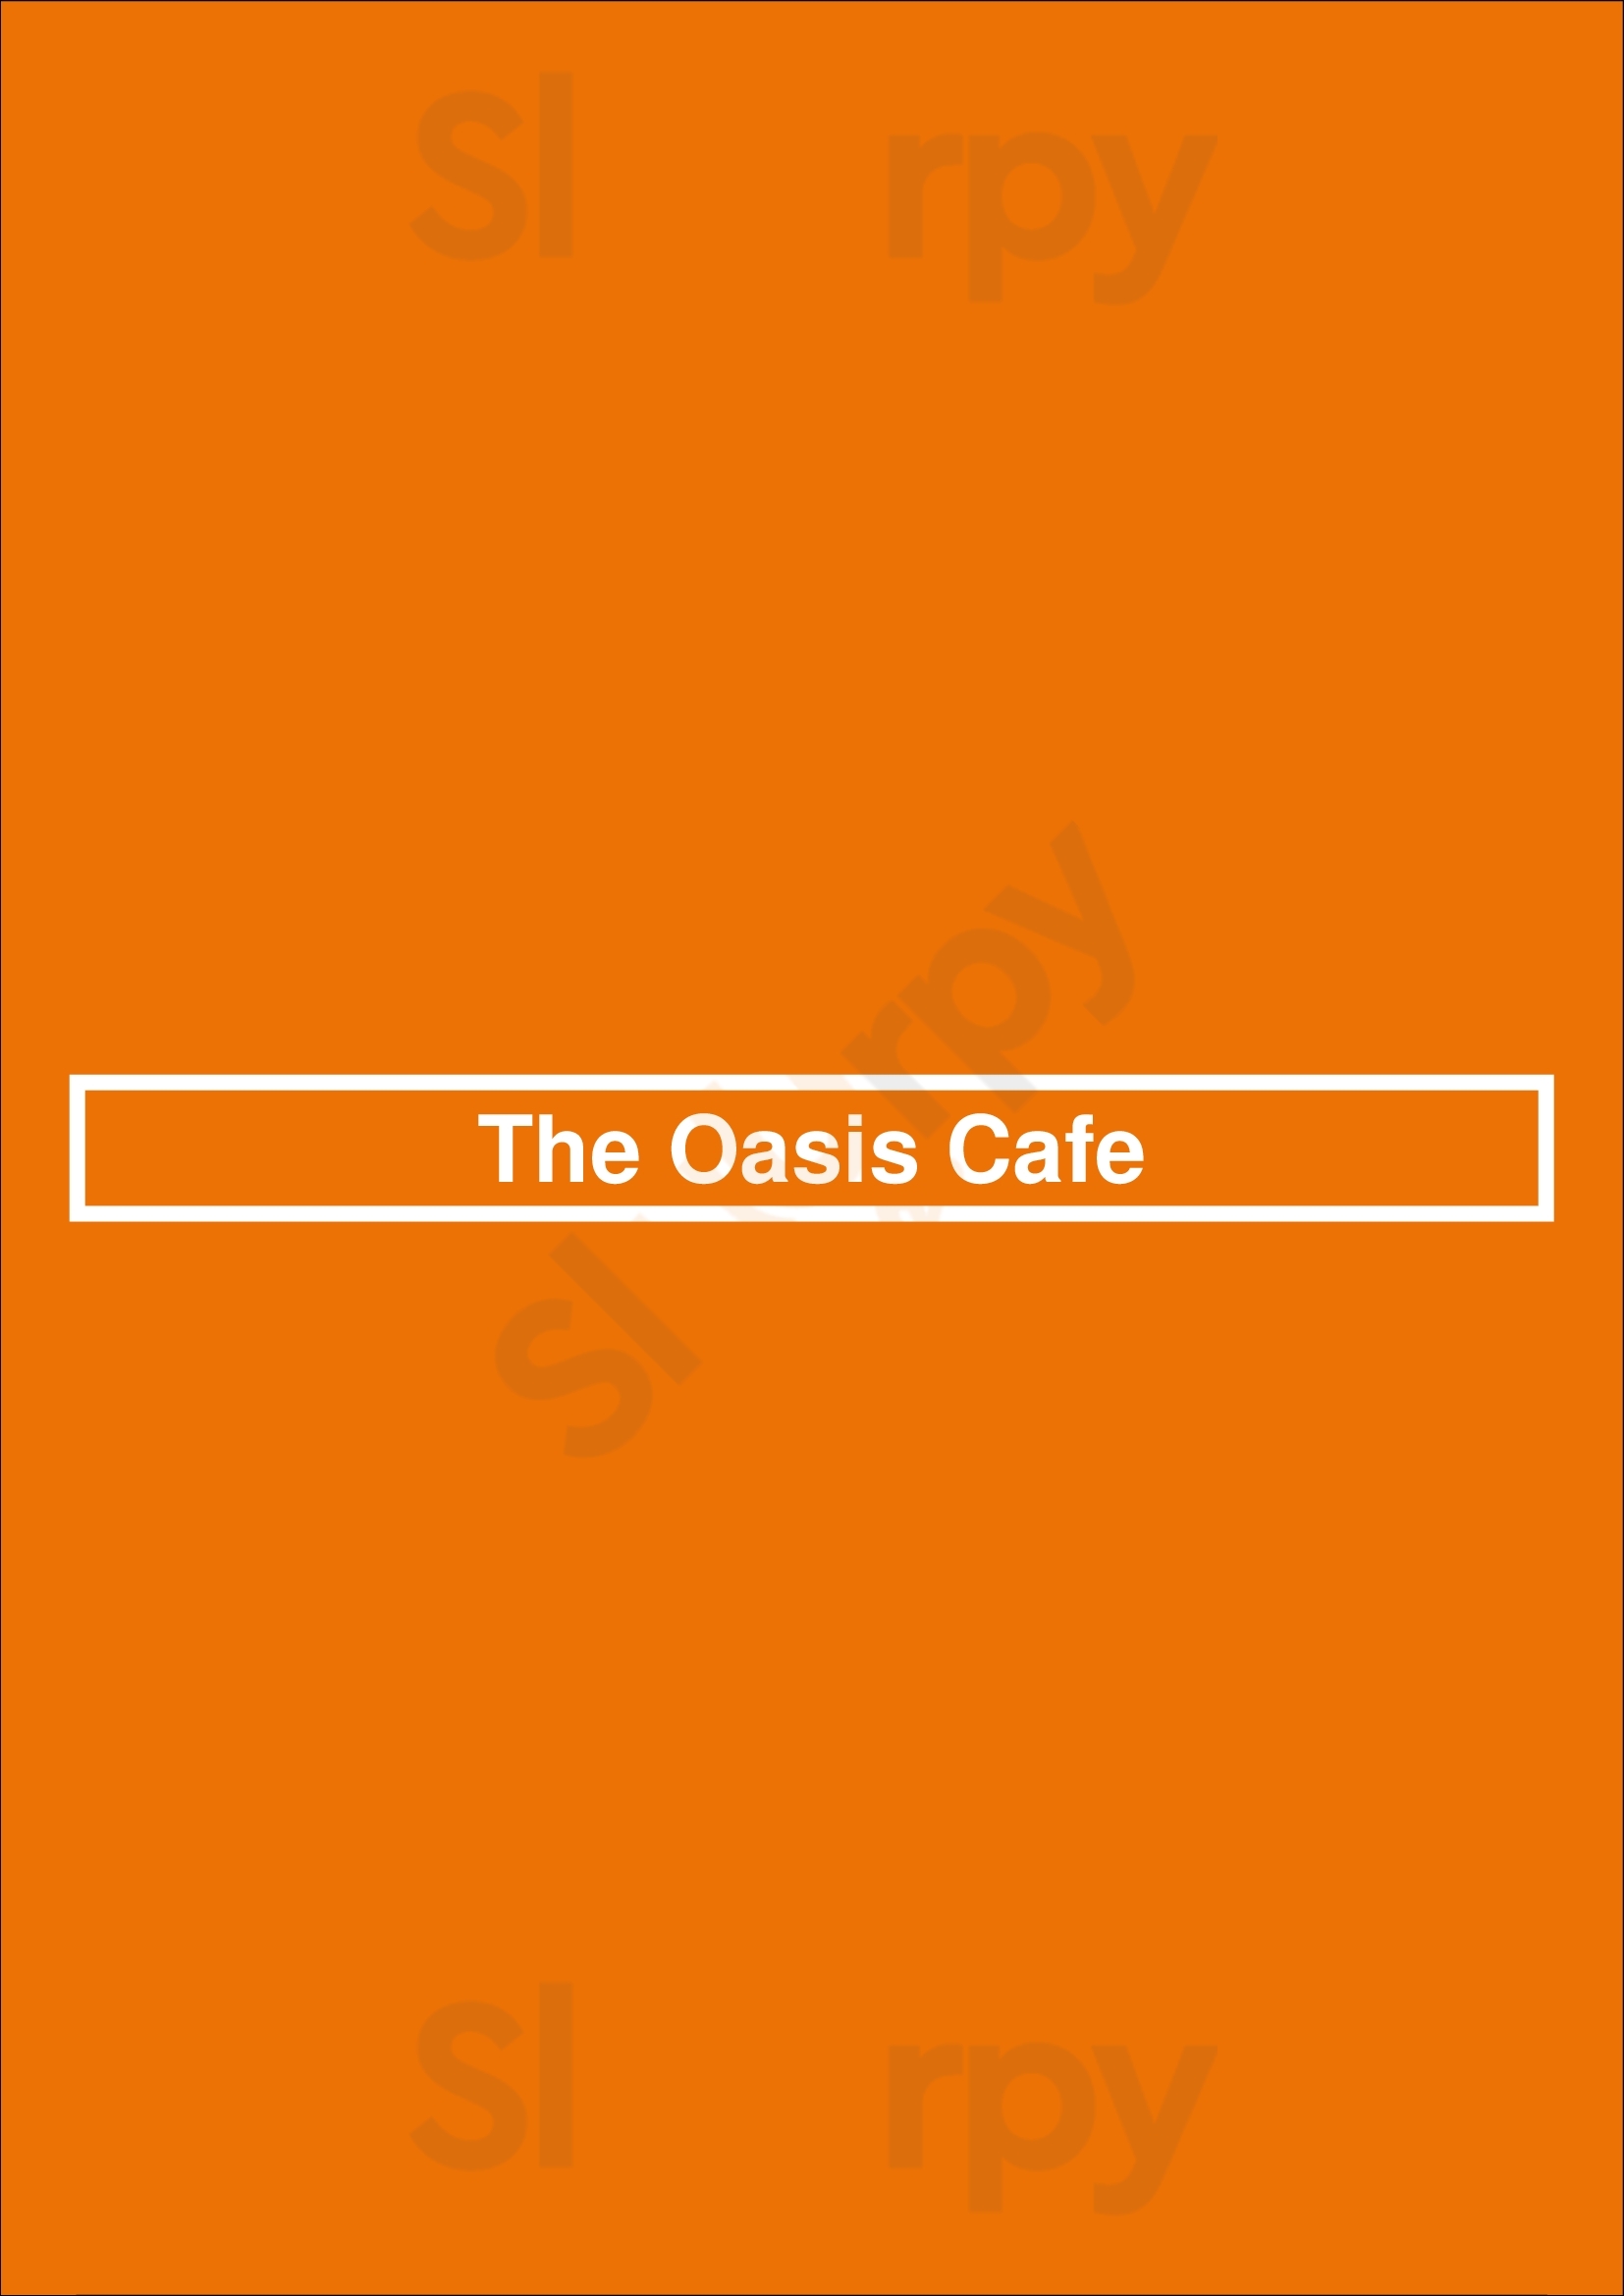 The Oasis Cafe San Jose Menu - 1